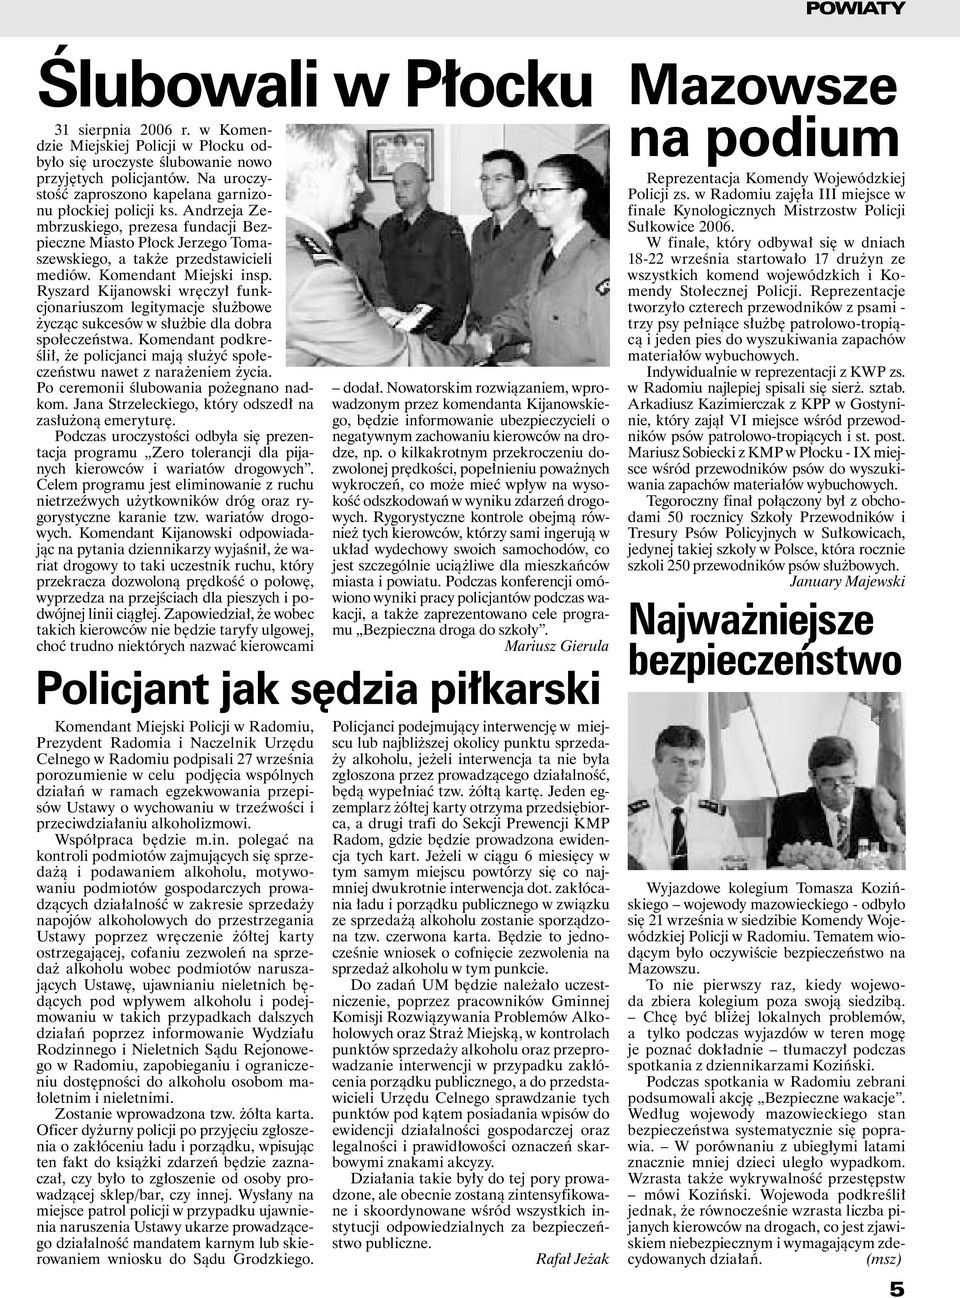 Komendant Miejski insp. Ryszard Kijanowski wręczył funkcjonariuszom legitymacje służbowe życząc sukcesów w służbie dla dobra społeczeństwa.